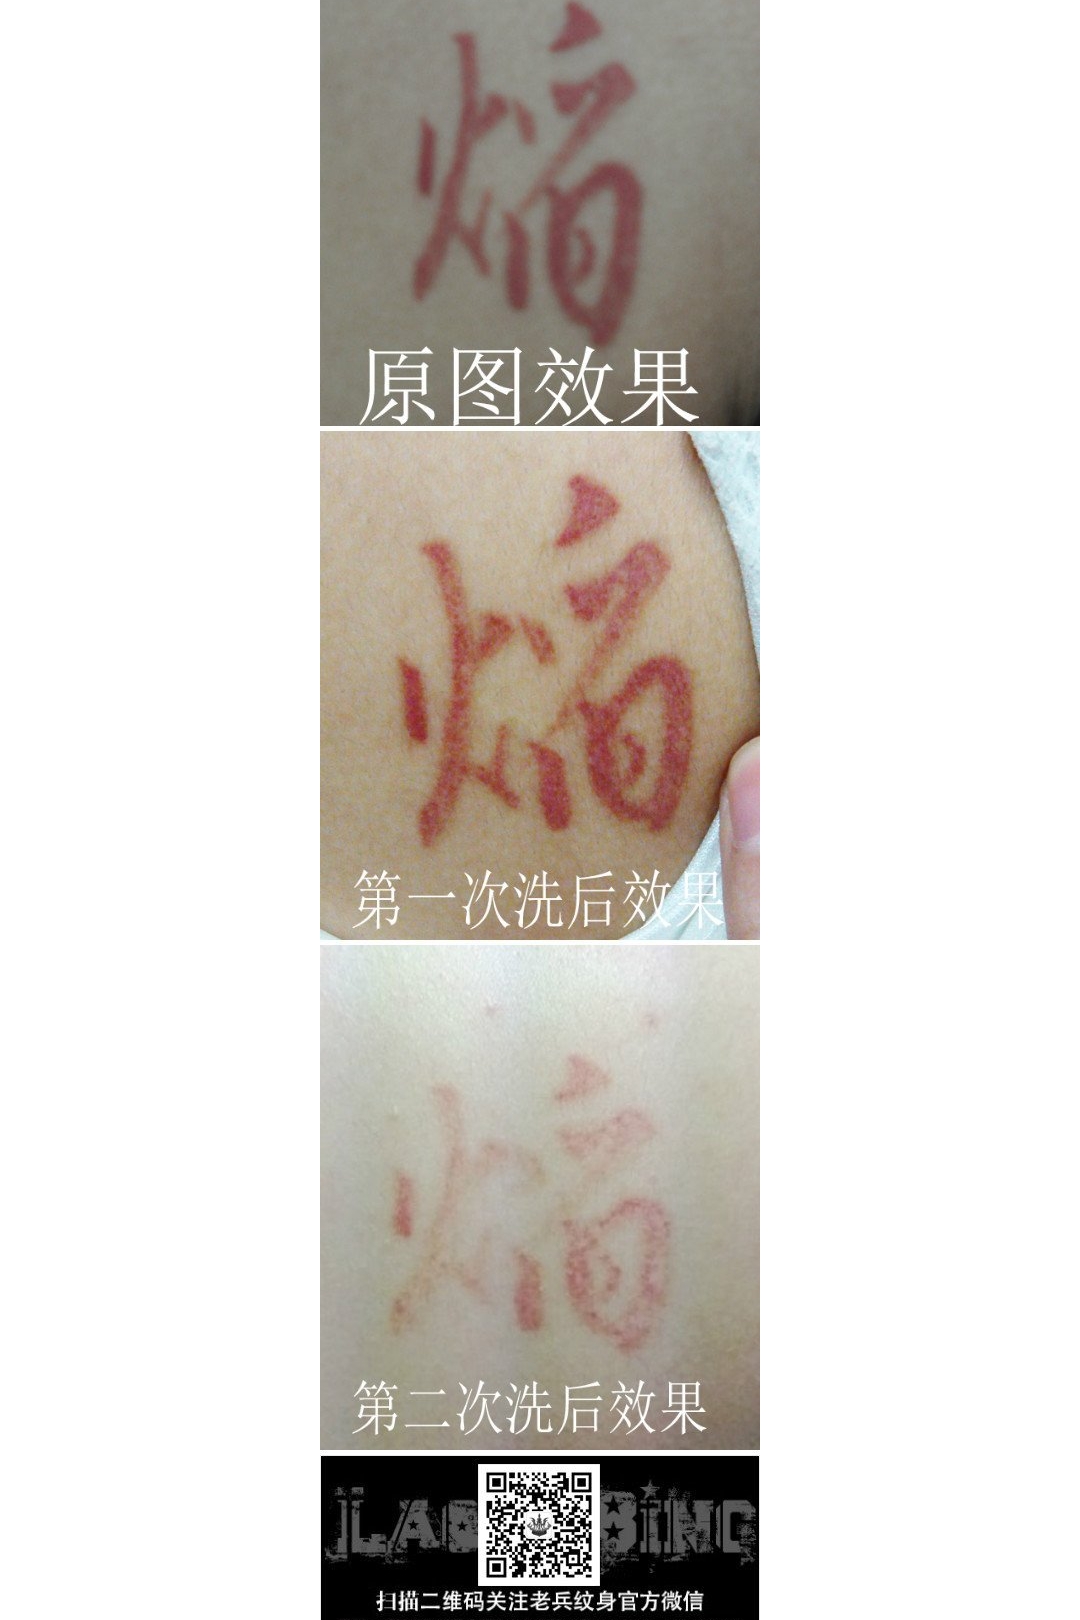 肩背红色汉字激光洗纹身案例来自武汉洗纹身最专业的店